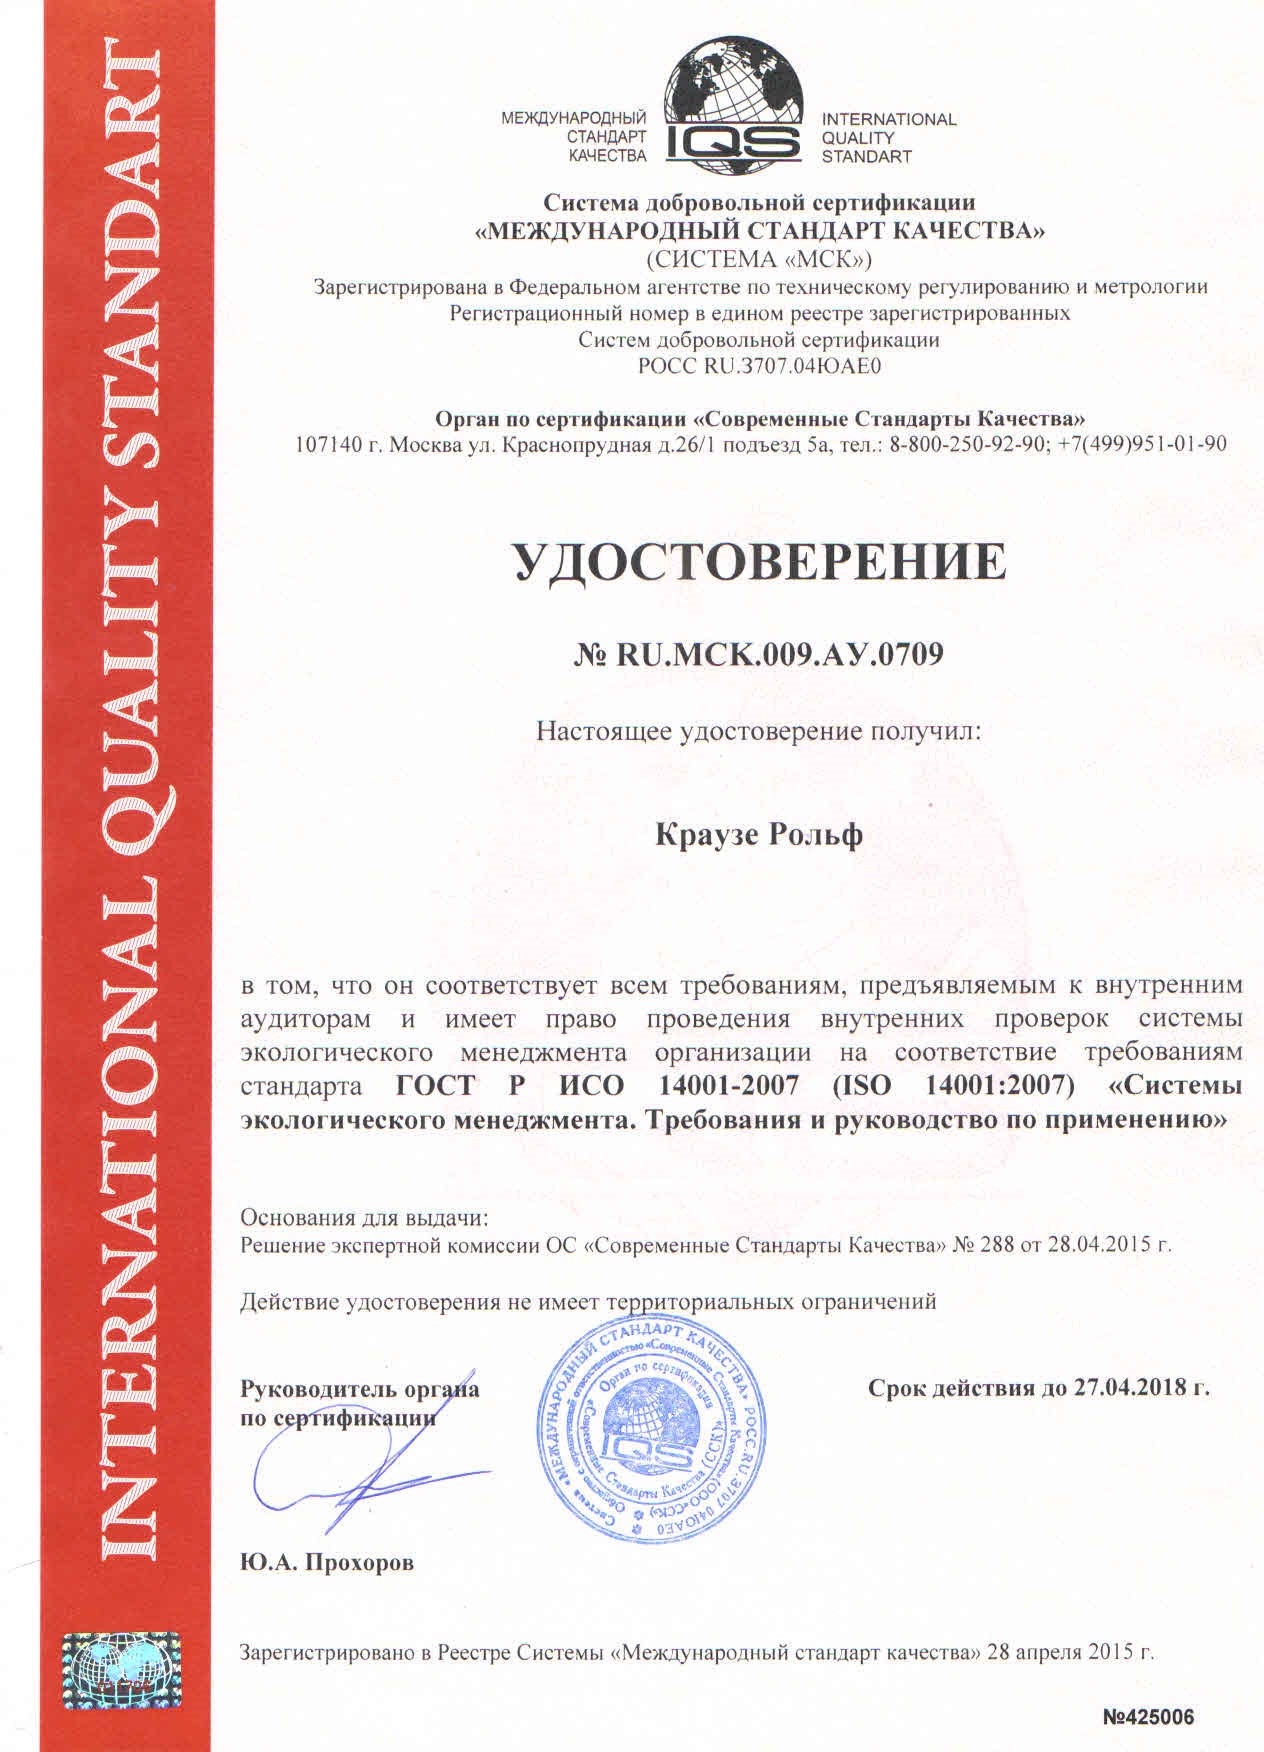 сертификат соответствия исо 14001